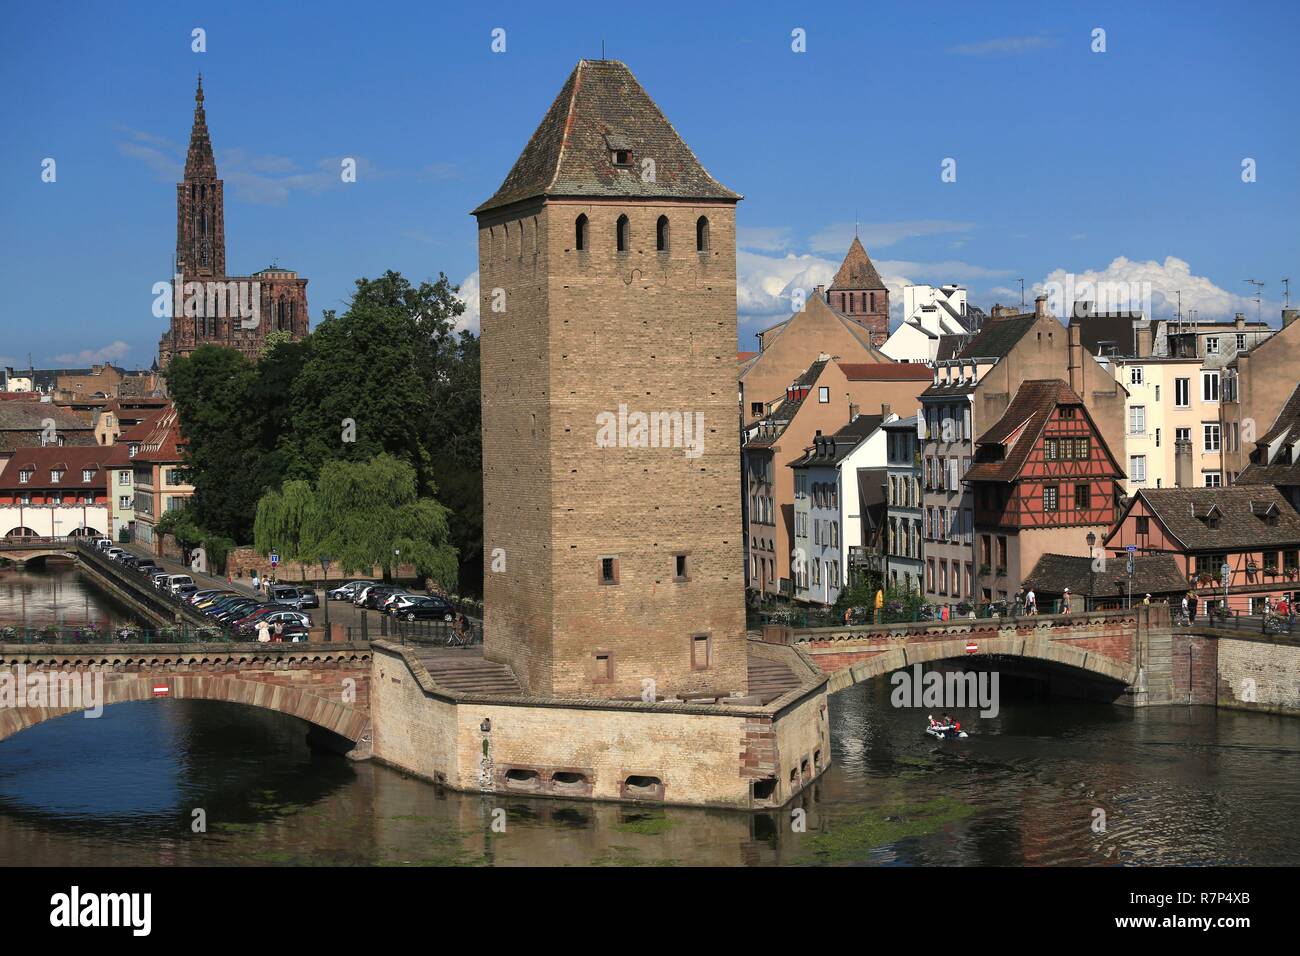 Francia, Bas Rhin, Estrasburgo, casco antiguo catalogado como Patrimonio Mundial por la UNESCO, la cubierta puentes que cruzan el río Ill y la Catedral de Notre Dame, visto desde la presa de Vauban Foto de stock